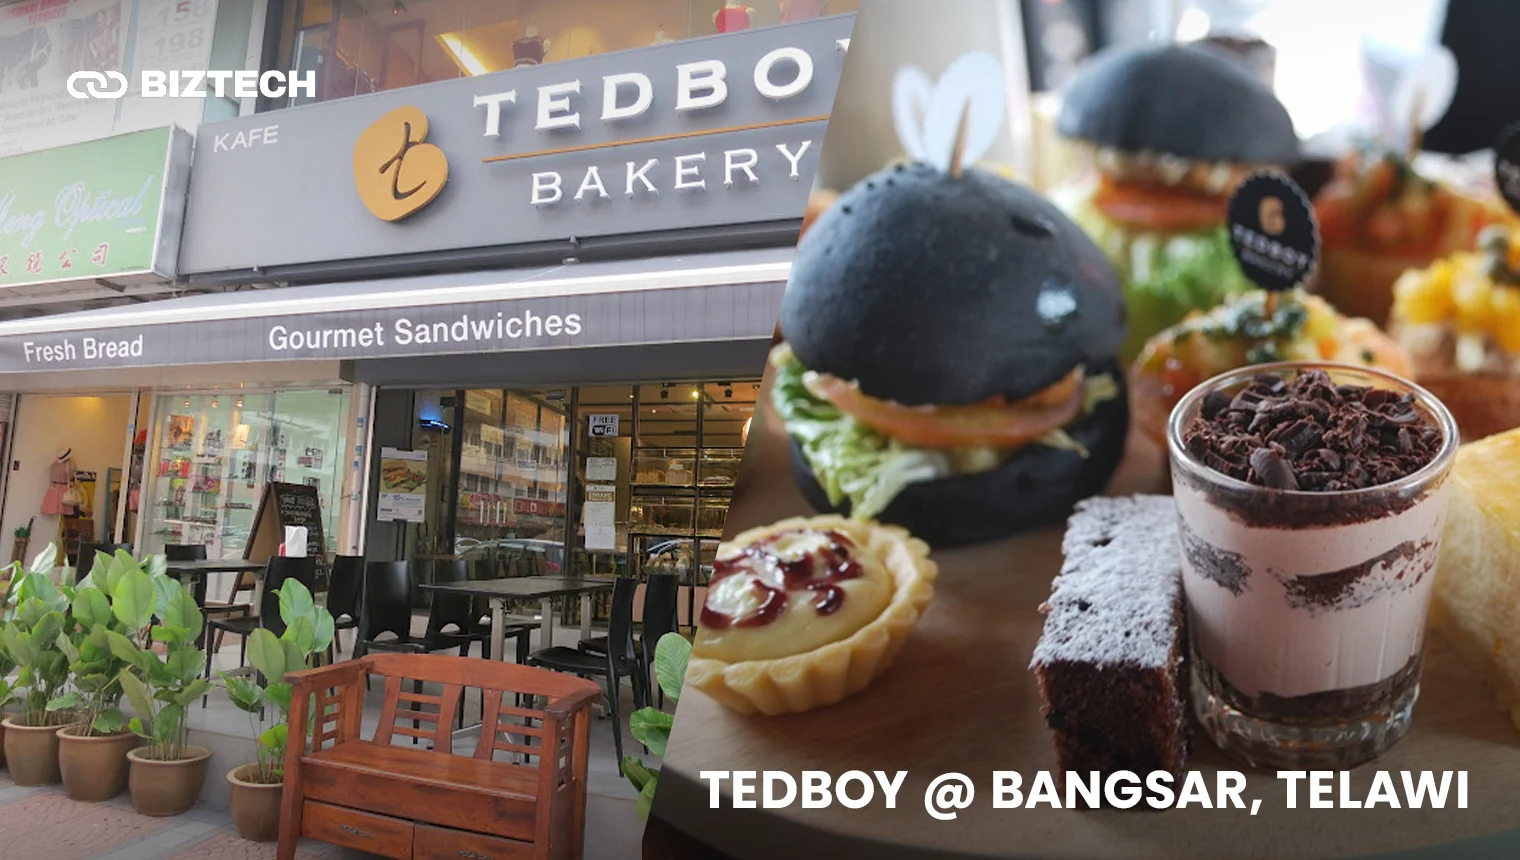 Tedboy @ Bangsar, Telawi